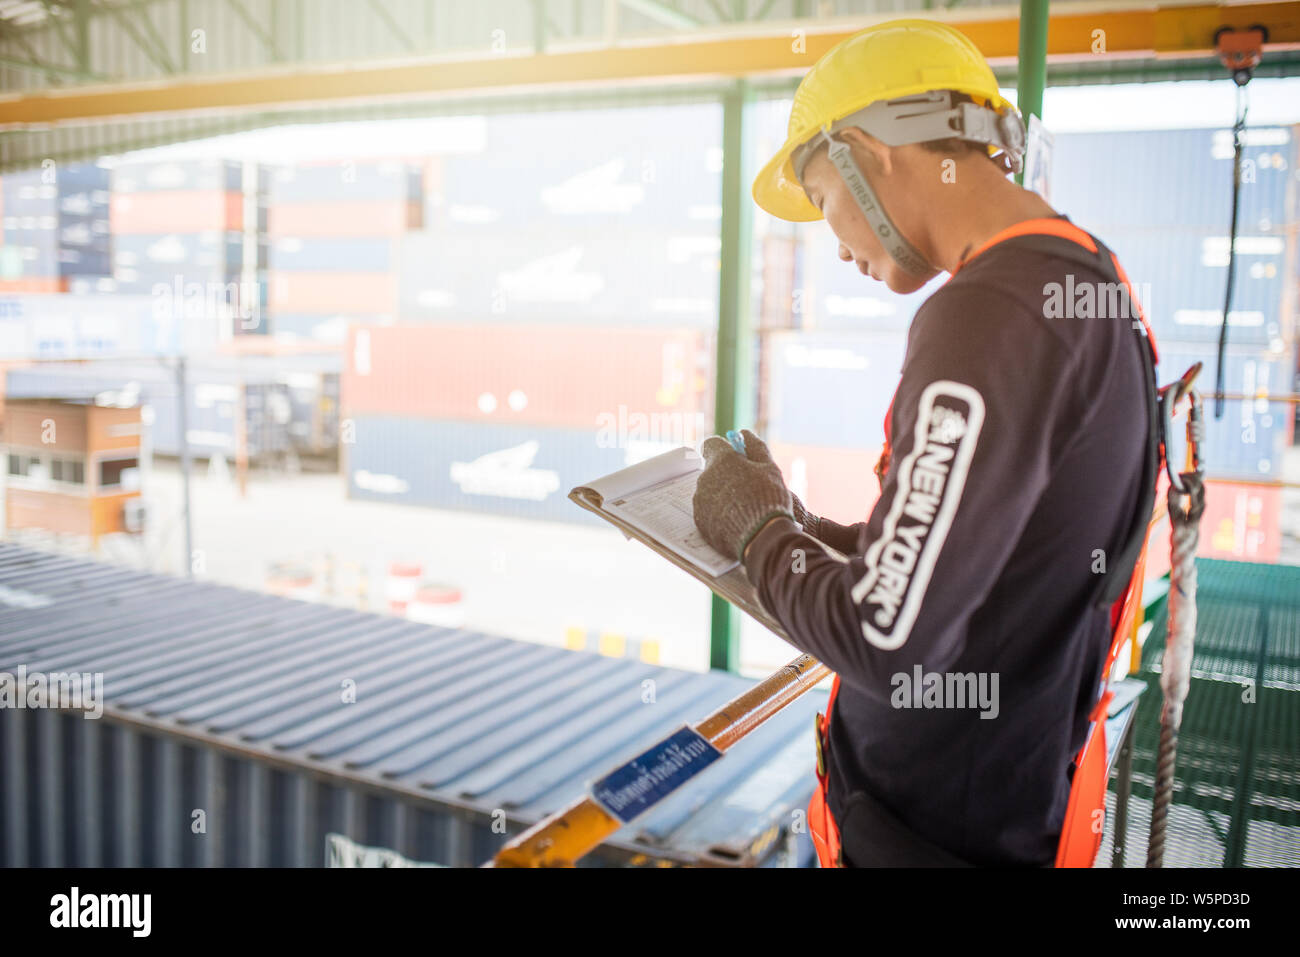 Registrazione dei lavoratori industriali su documenti con imbracatura protettiva di sicurezza, contesto di lavoro industriale. Foto Stock